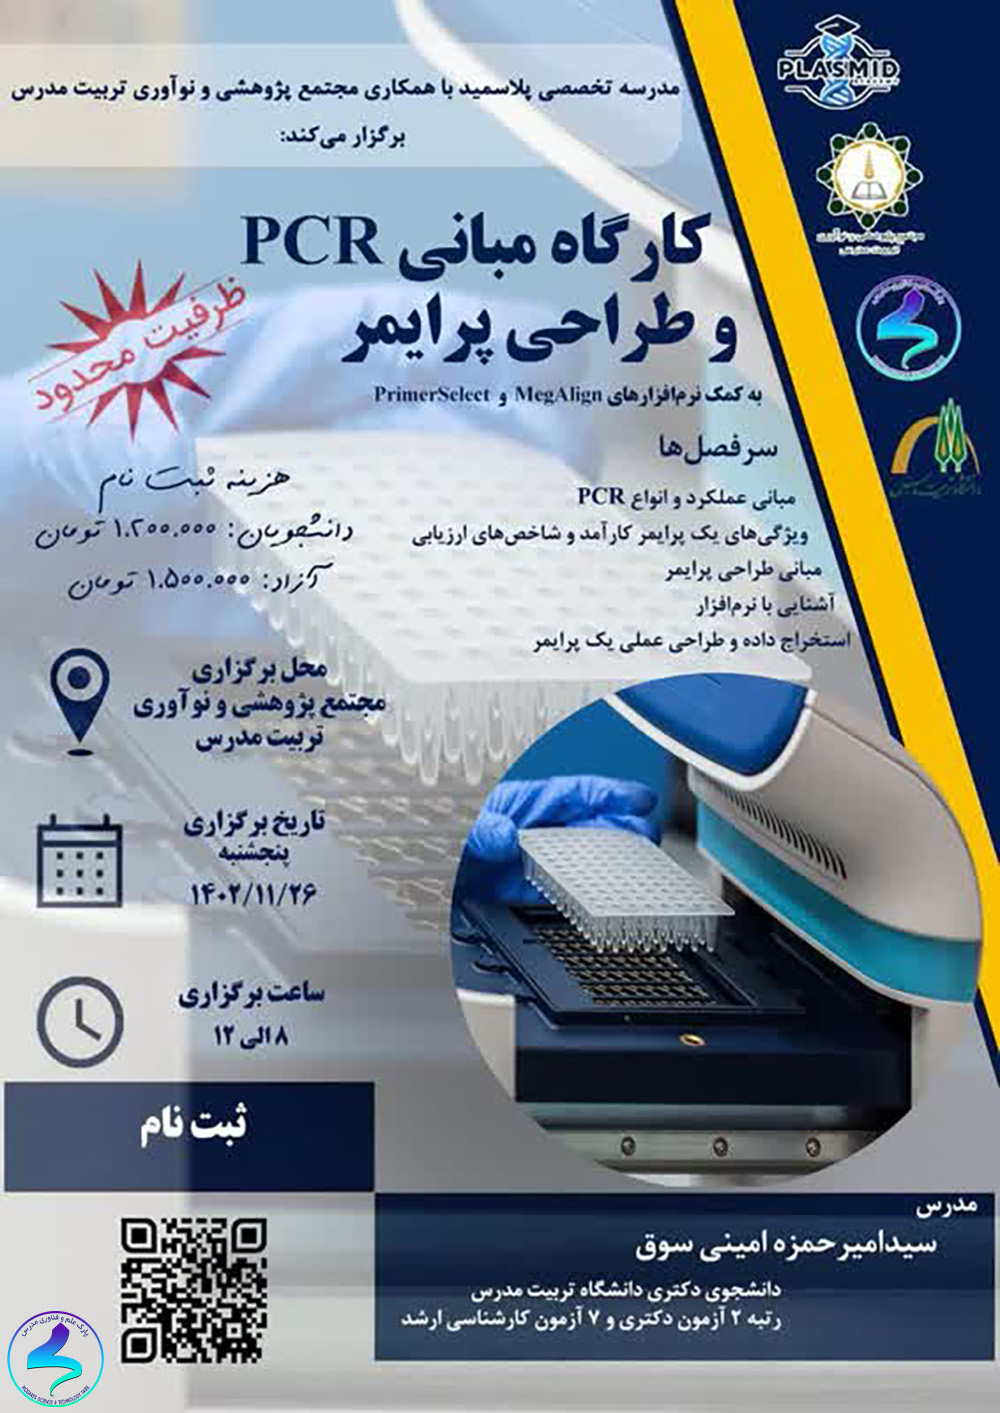 کارگاه مبانی PCR و طراحی پرایمر